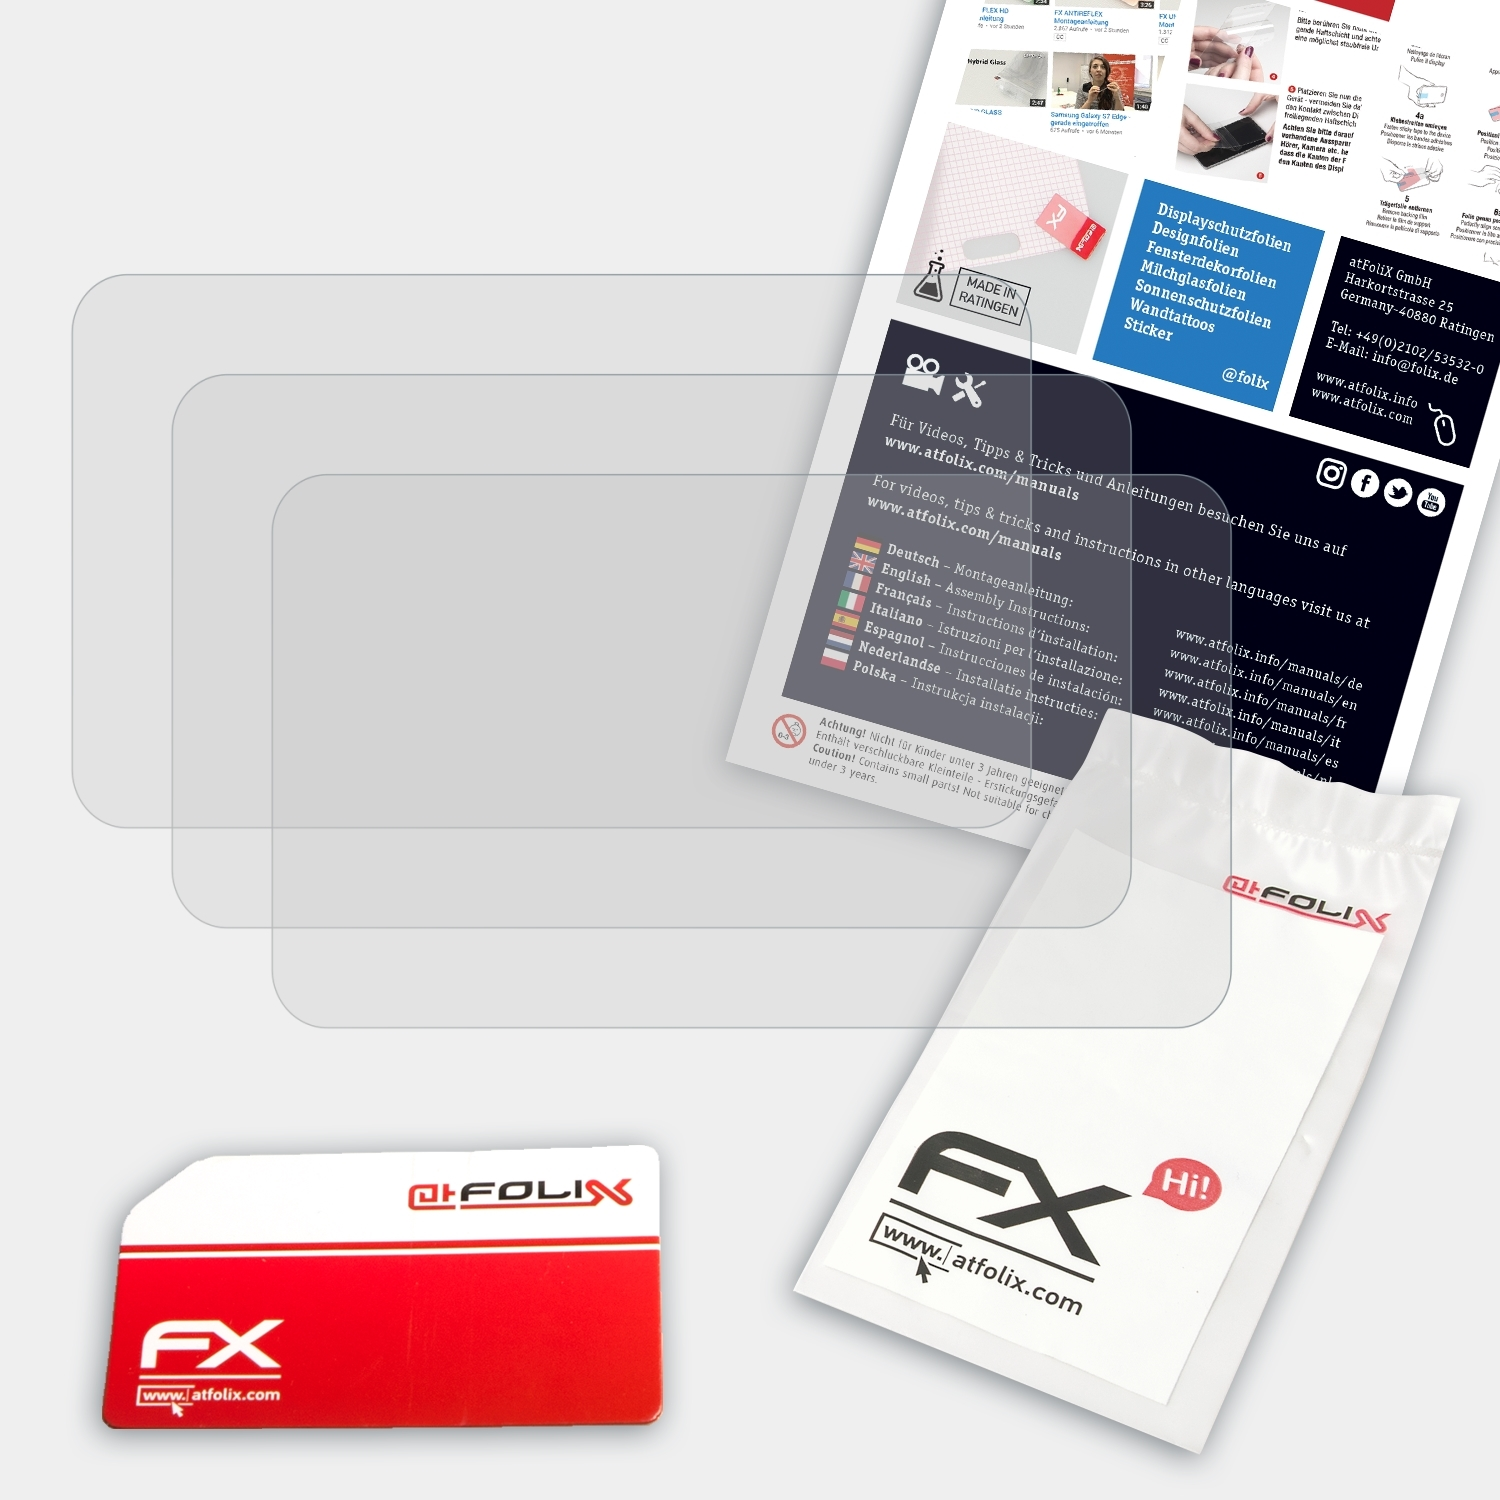 ATFOLIX 3x FX-Antireflex Displayschutz(für GC-PX100) JVC